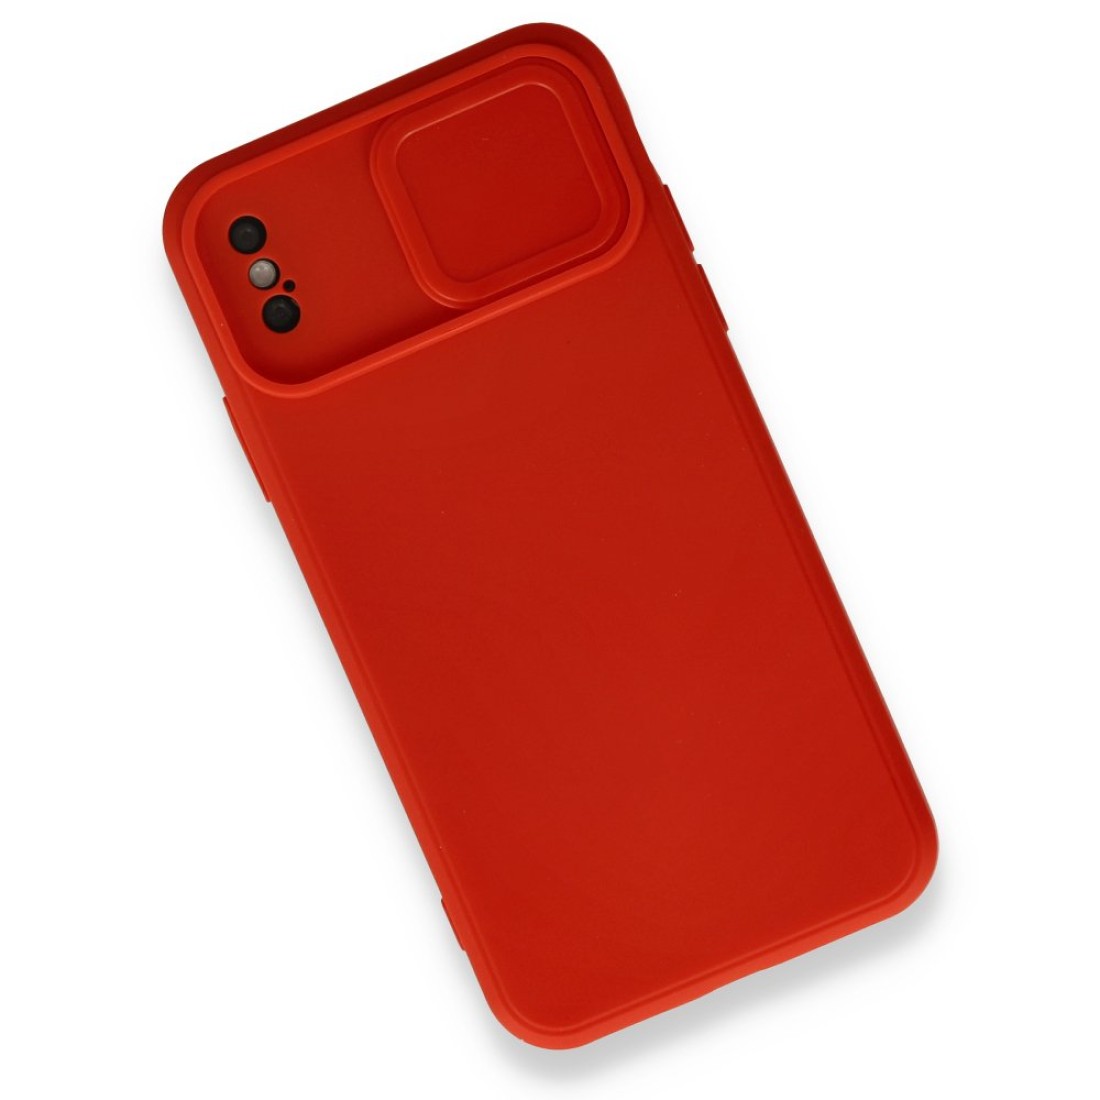 Apple iPhone X Kılıf Color Lens Silikon - Kırmızı